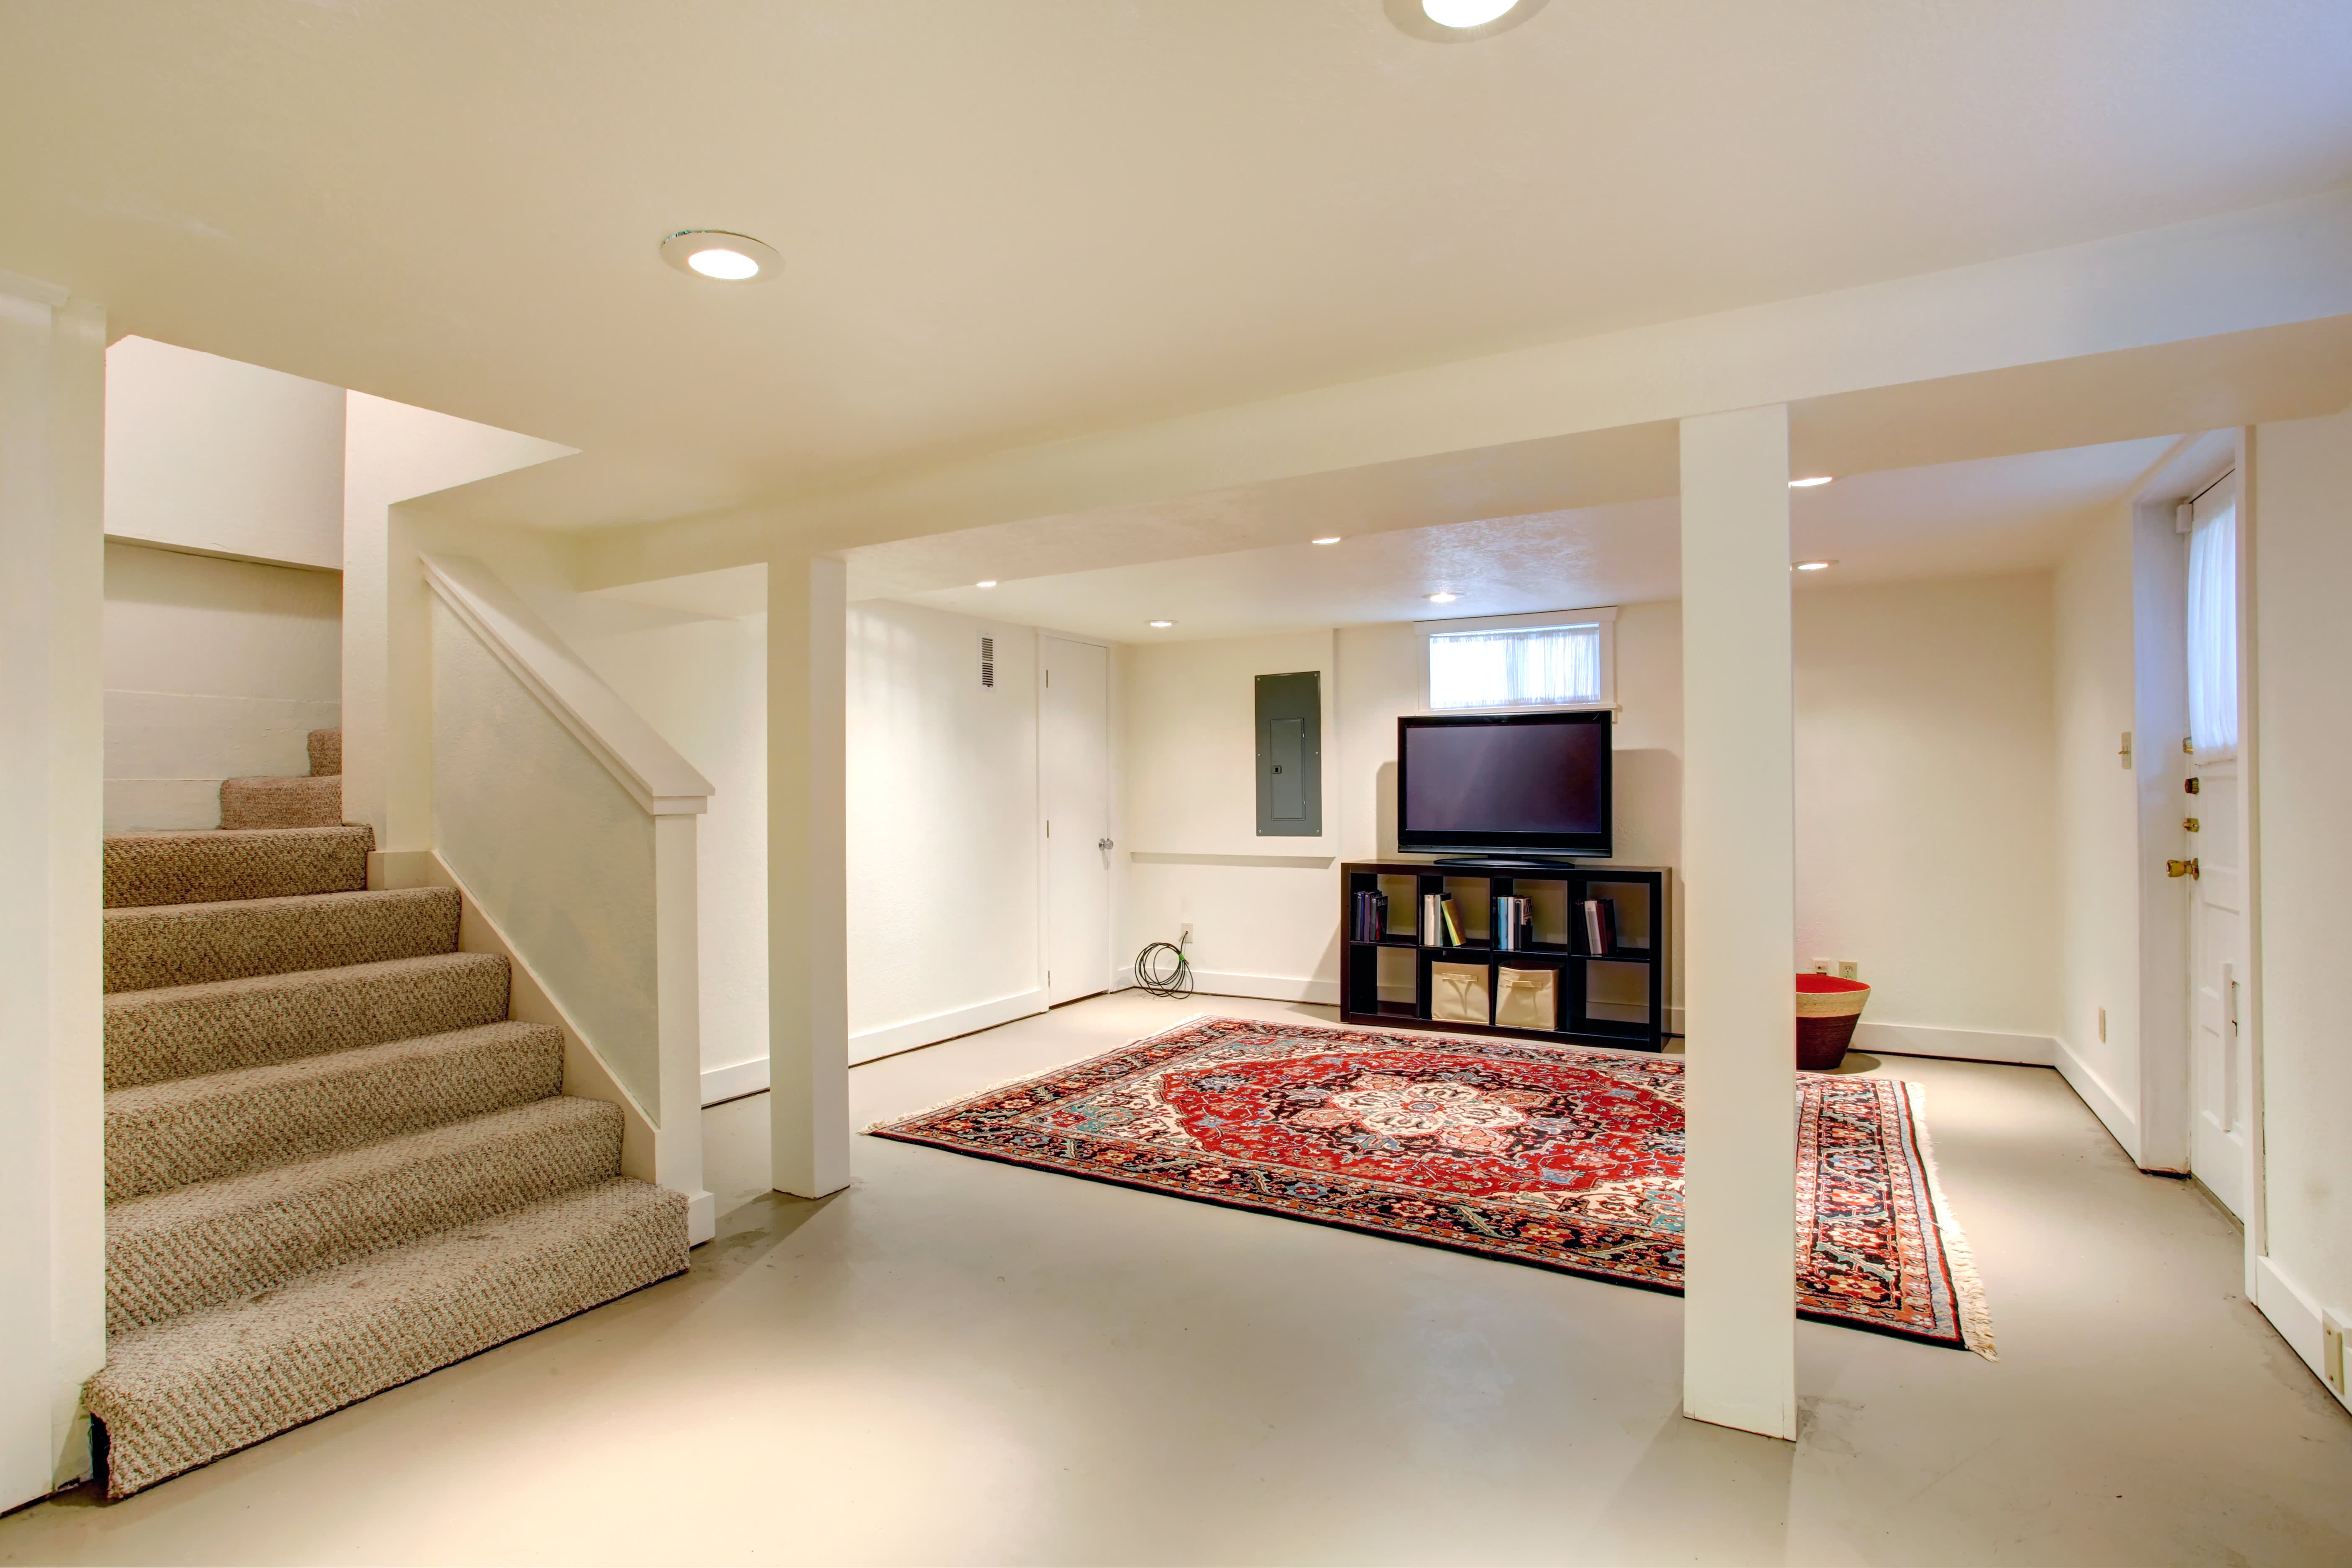 How To Redo Basement Floor – Flooring Ideas